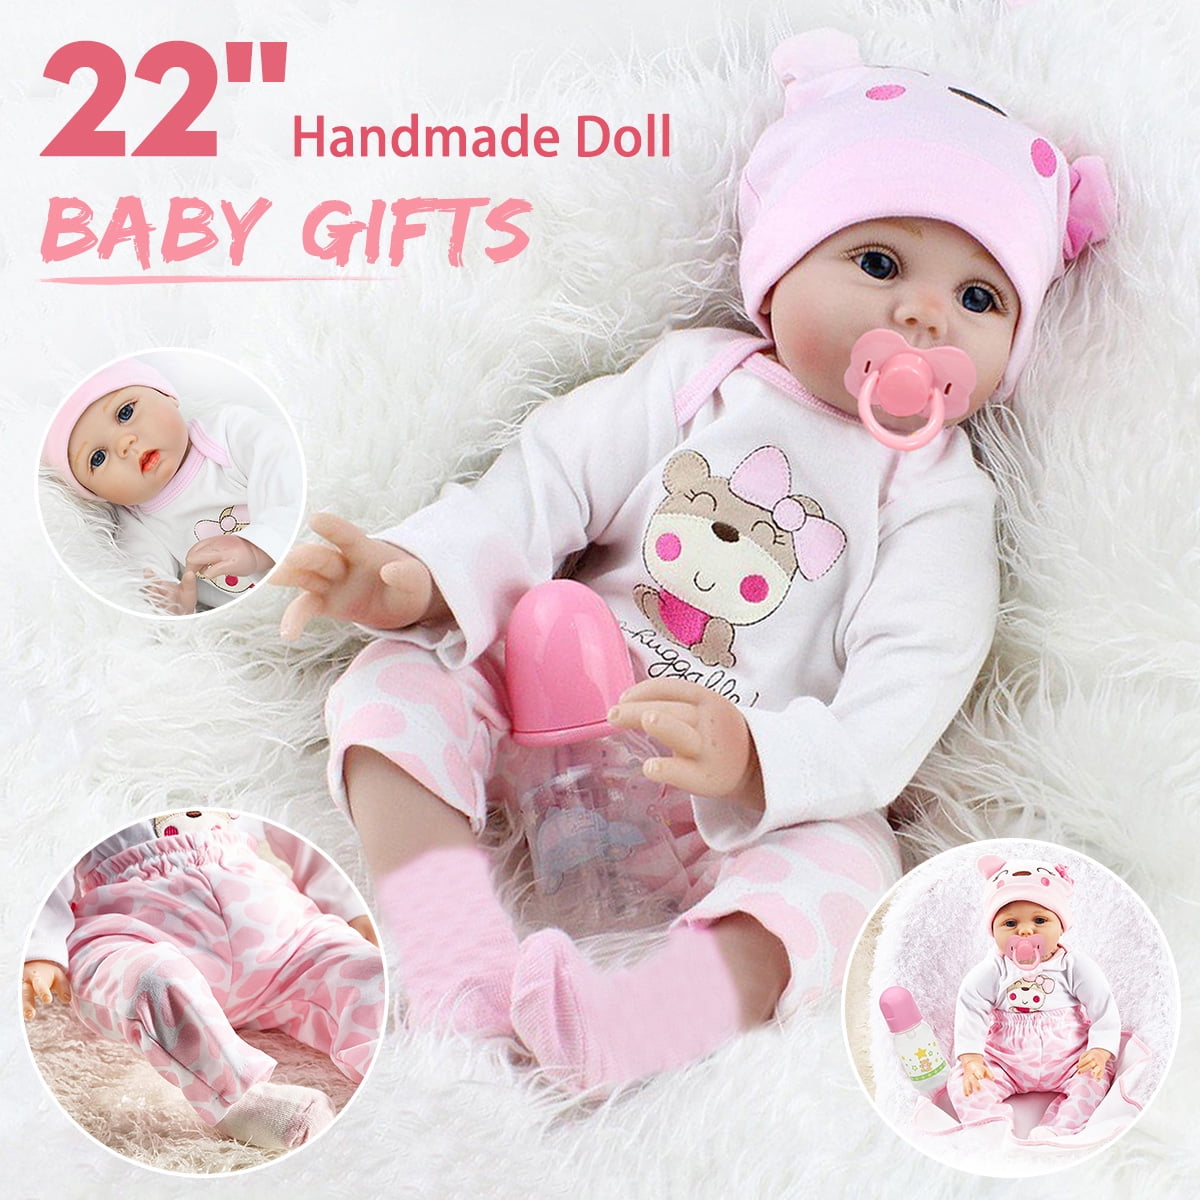 22" Full body Soft Vinyl Silicone Reborn Baby Dolls Realistic Newborn Boy Doll